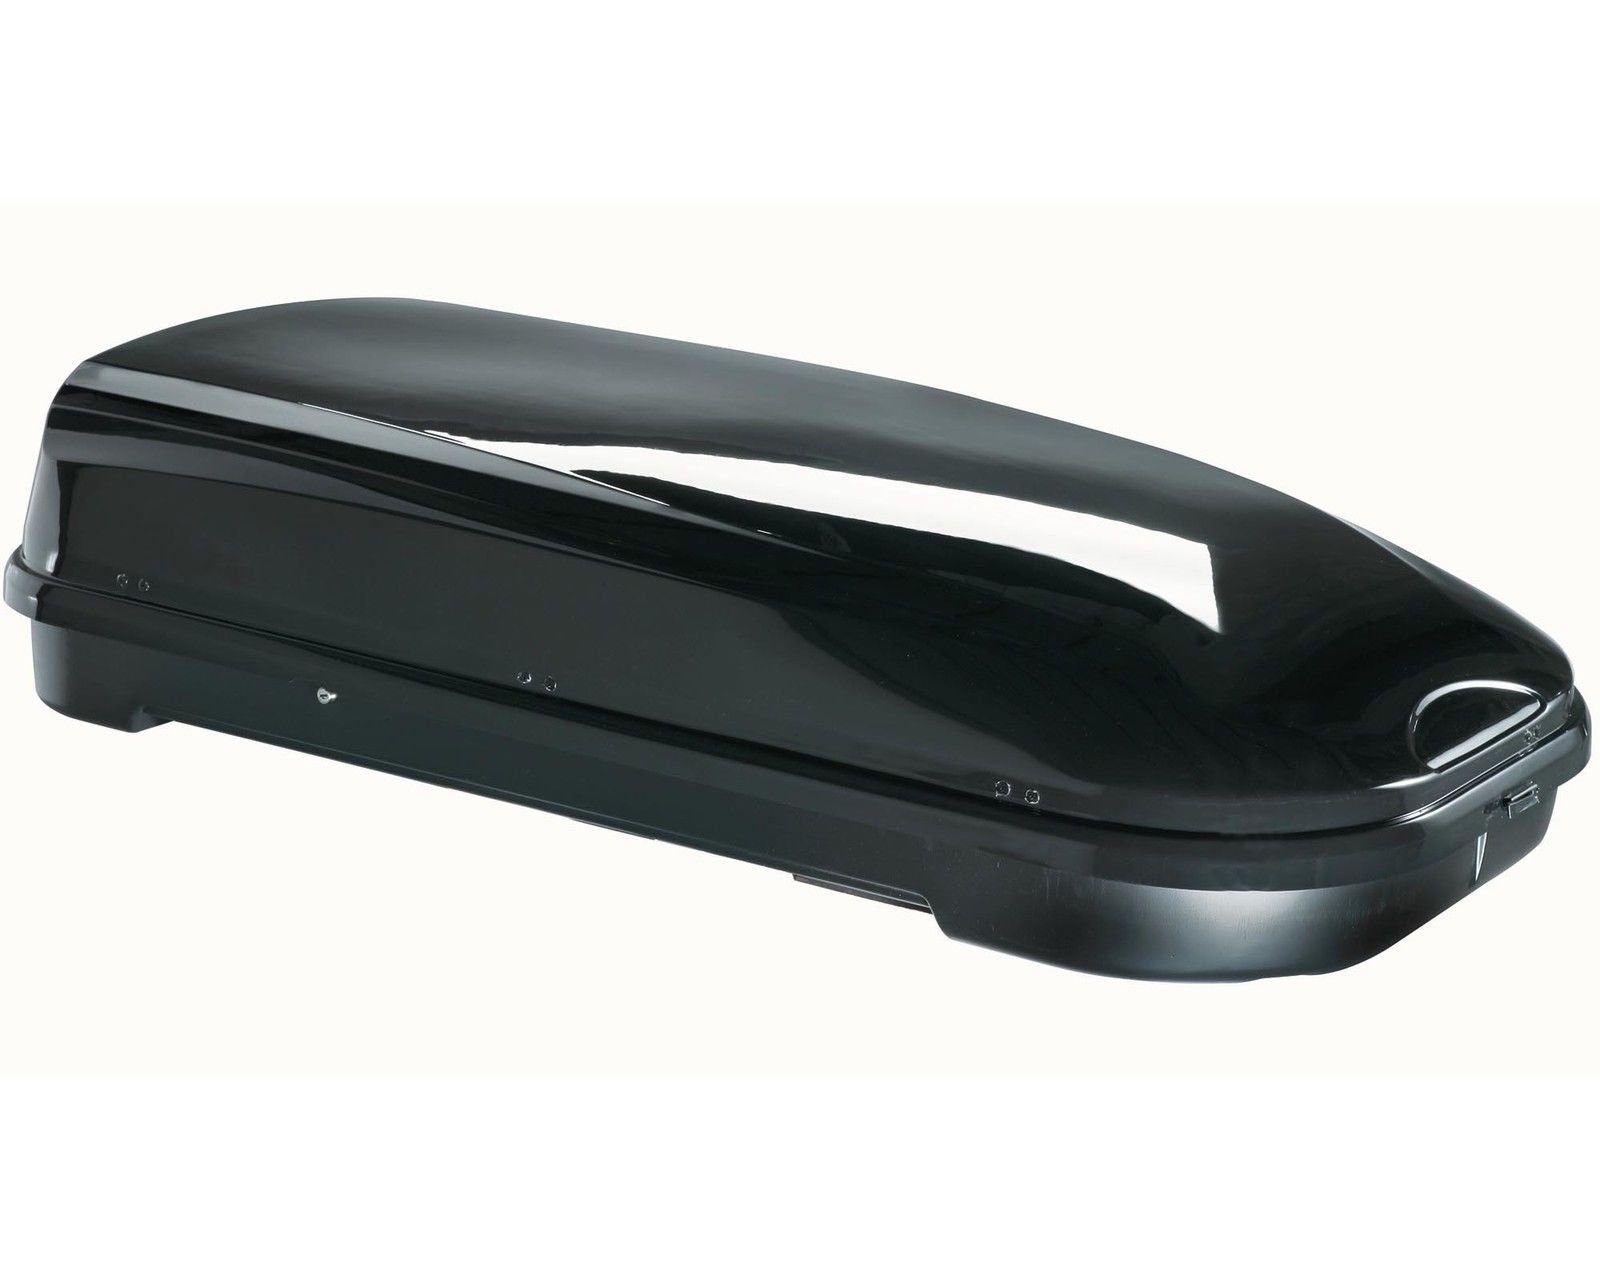 VDP Dachbox, (ALLES IN EINEM - Sparen Sie sich die Auswahl mehrerer Komponenten für Ihre perfekte Transportlösung - Mit dem Set aus Dachbox und Dachträger erhalten Sie ein leicht zu montierendes Komplettpaket mit allen Befestigungsteilen. Die glänzend-schwarze Box überzeugt mit ihrem edlen Design und viel Platz), Dachbox VDP-FL580 Relingträger Alu kompatibel mit BMW X5 E53 99-06 abschließbar